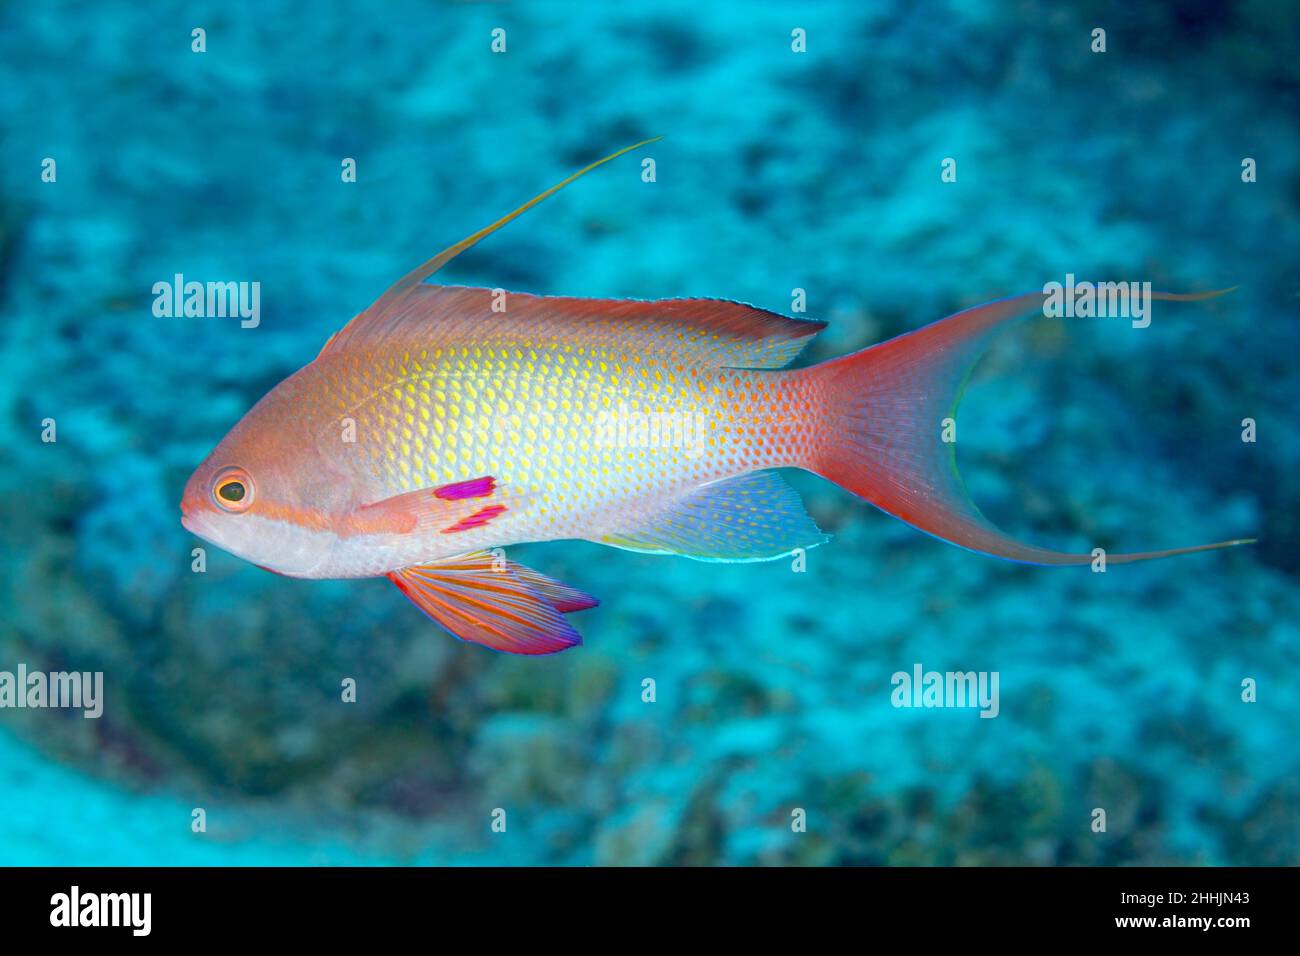 Farbenfrohe exotische einzelne kleine Meer goldie Fische mit rosa Haut schwimmen im tiefen klaren Wasser des roten Meeres in der Nähe von Korallen Stockfoto